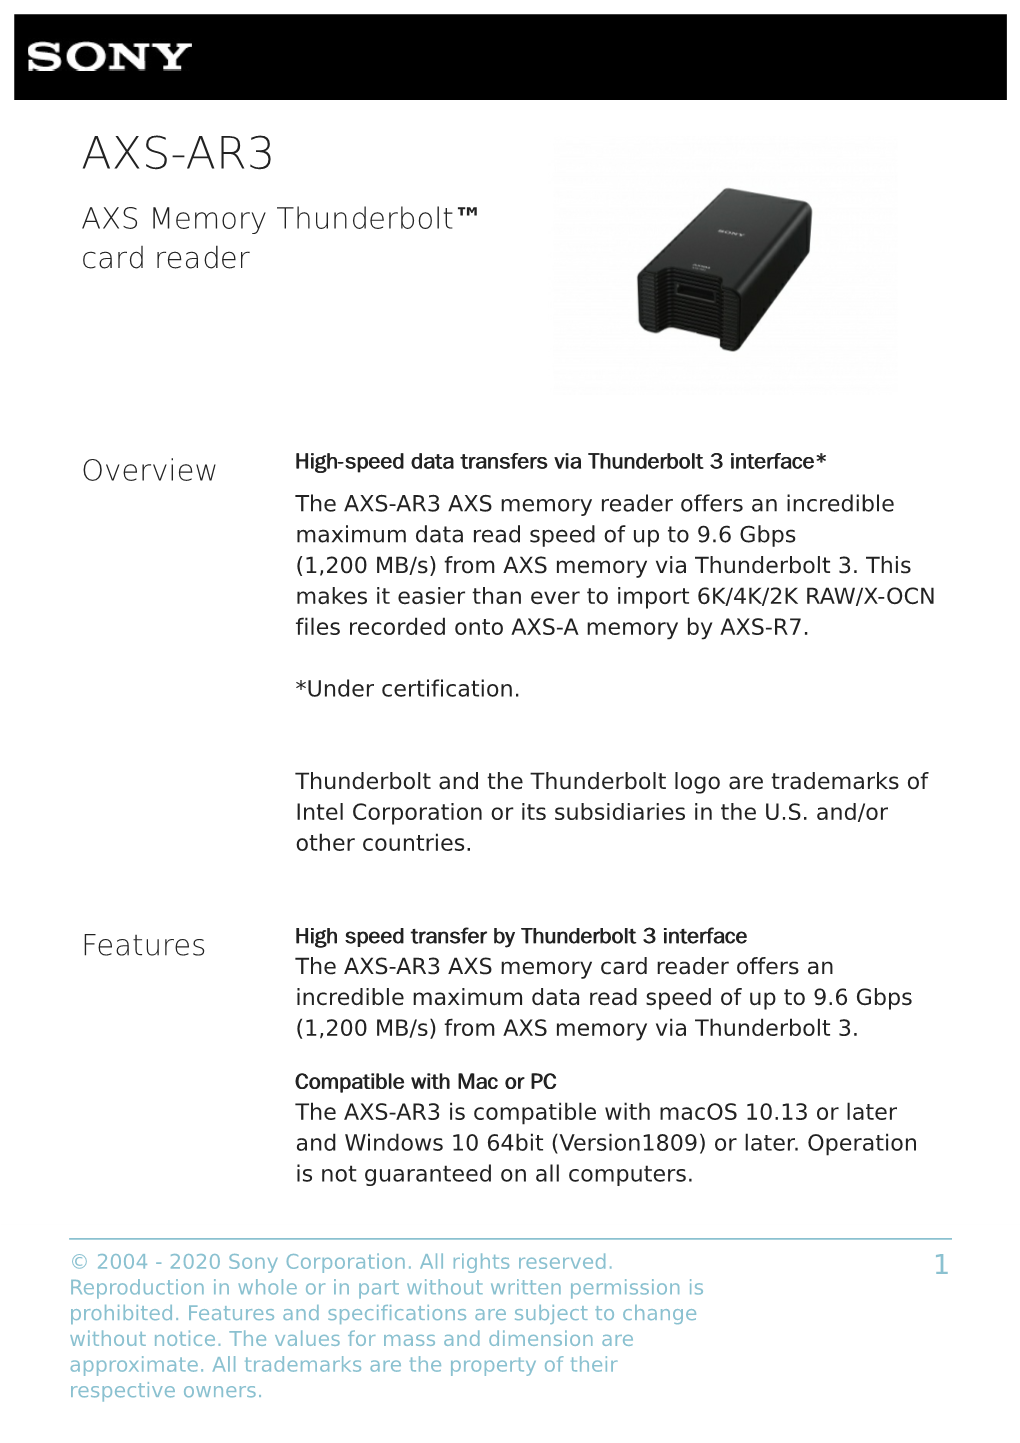 AXS-AR3 AXS Memory Thunderbolt™ Card Reader